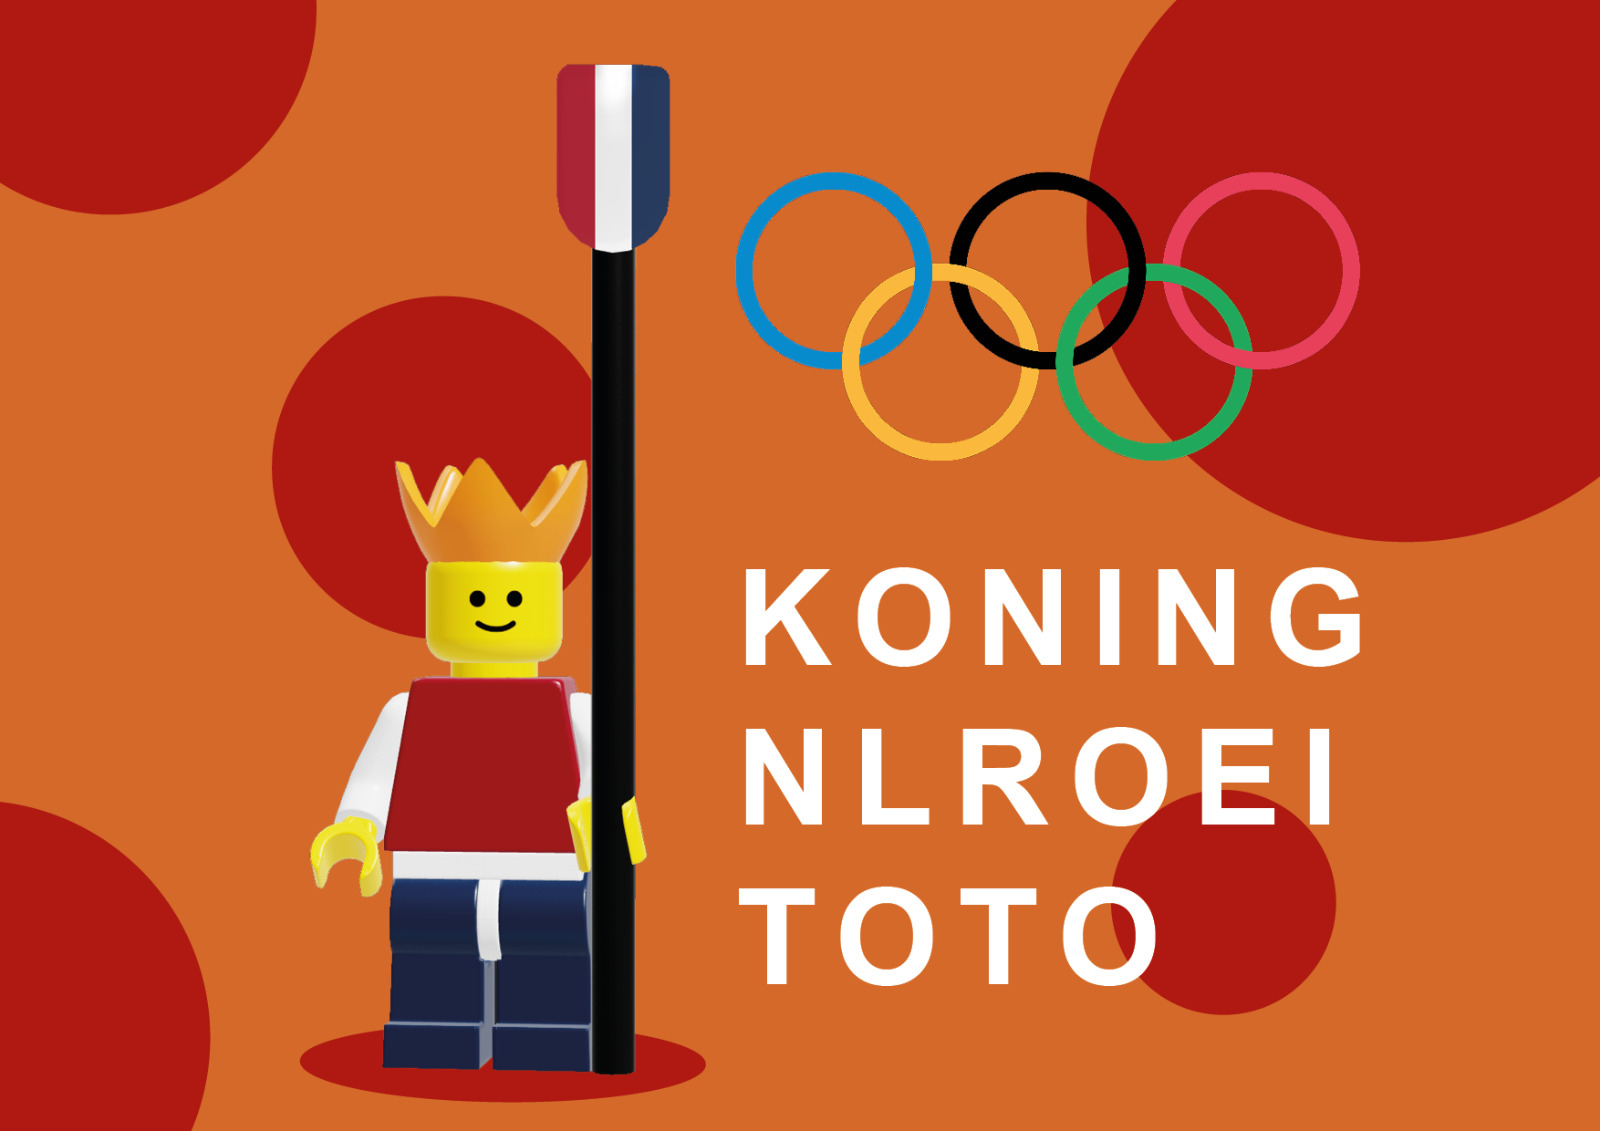 NLroei Toto Olympische Spelen Tokyo